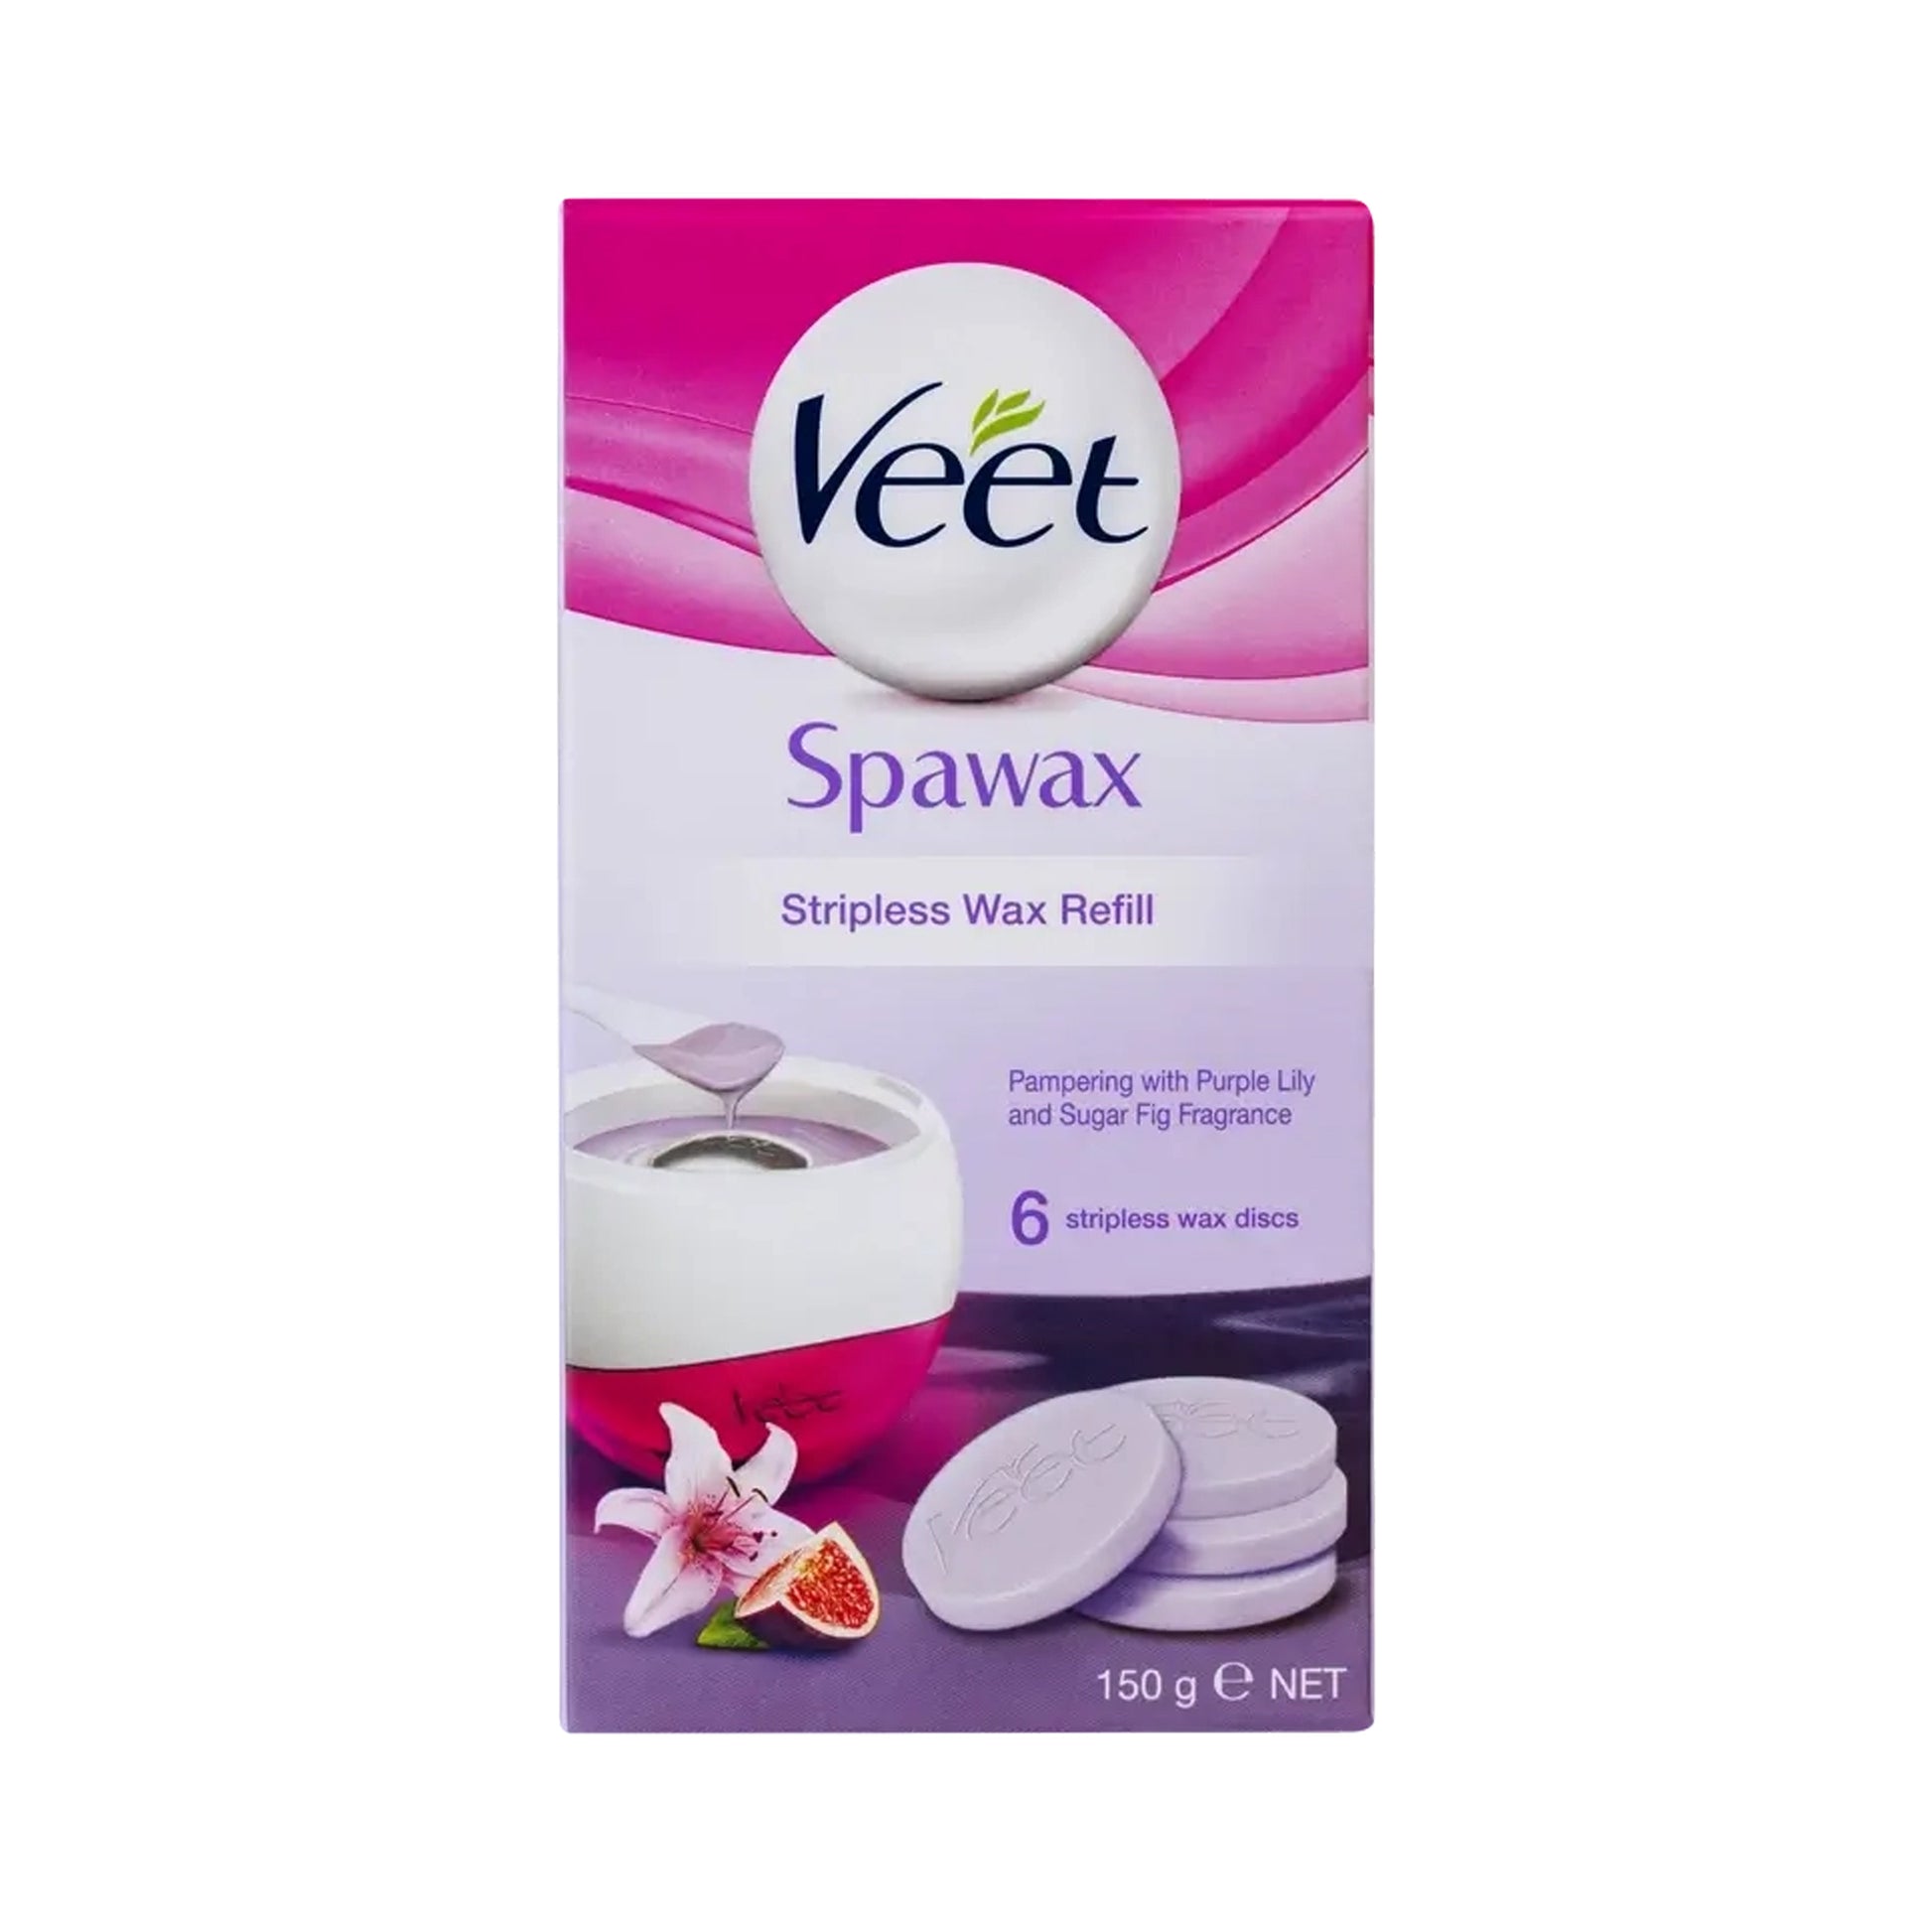 Veet Spawax Refill Purple Lily Sugar Fig 150 g